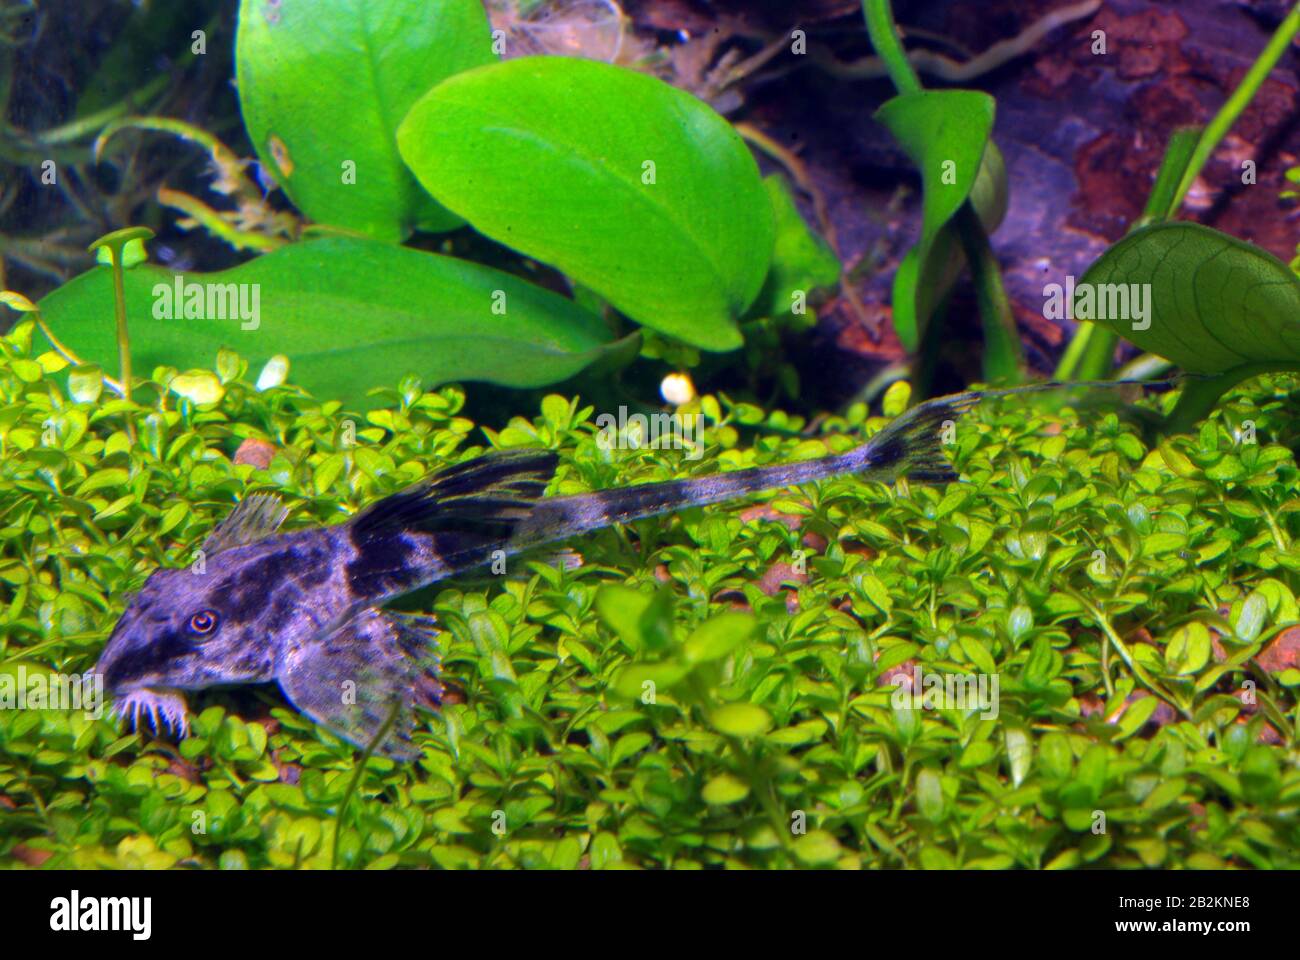 Laceolate whiptail catfish, Rineloricaria lanceolata Stock Photo